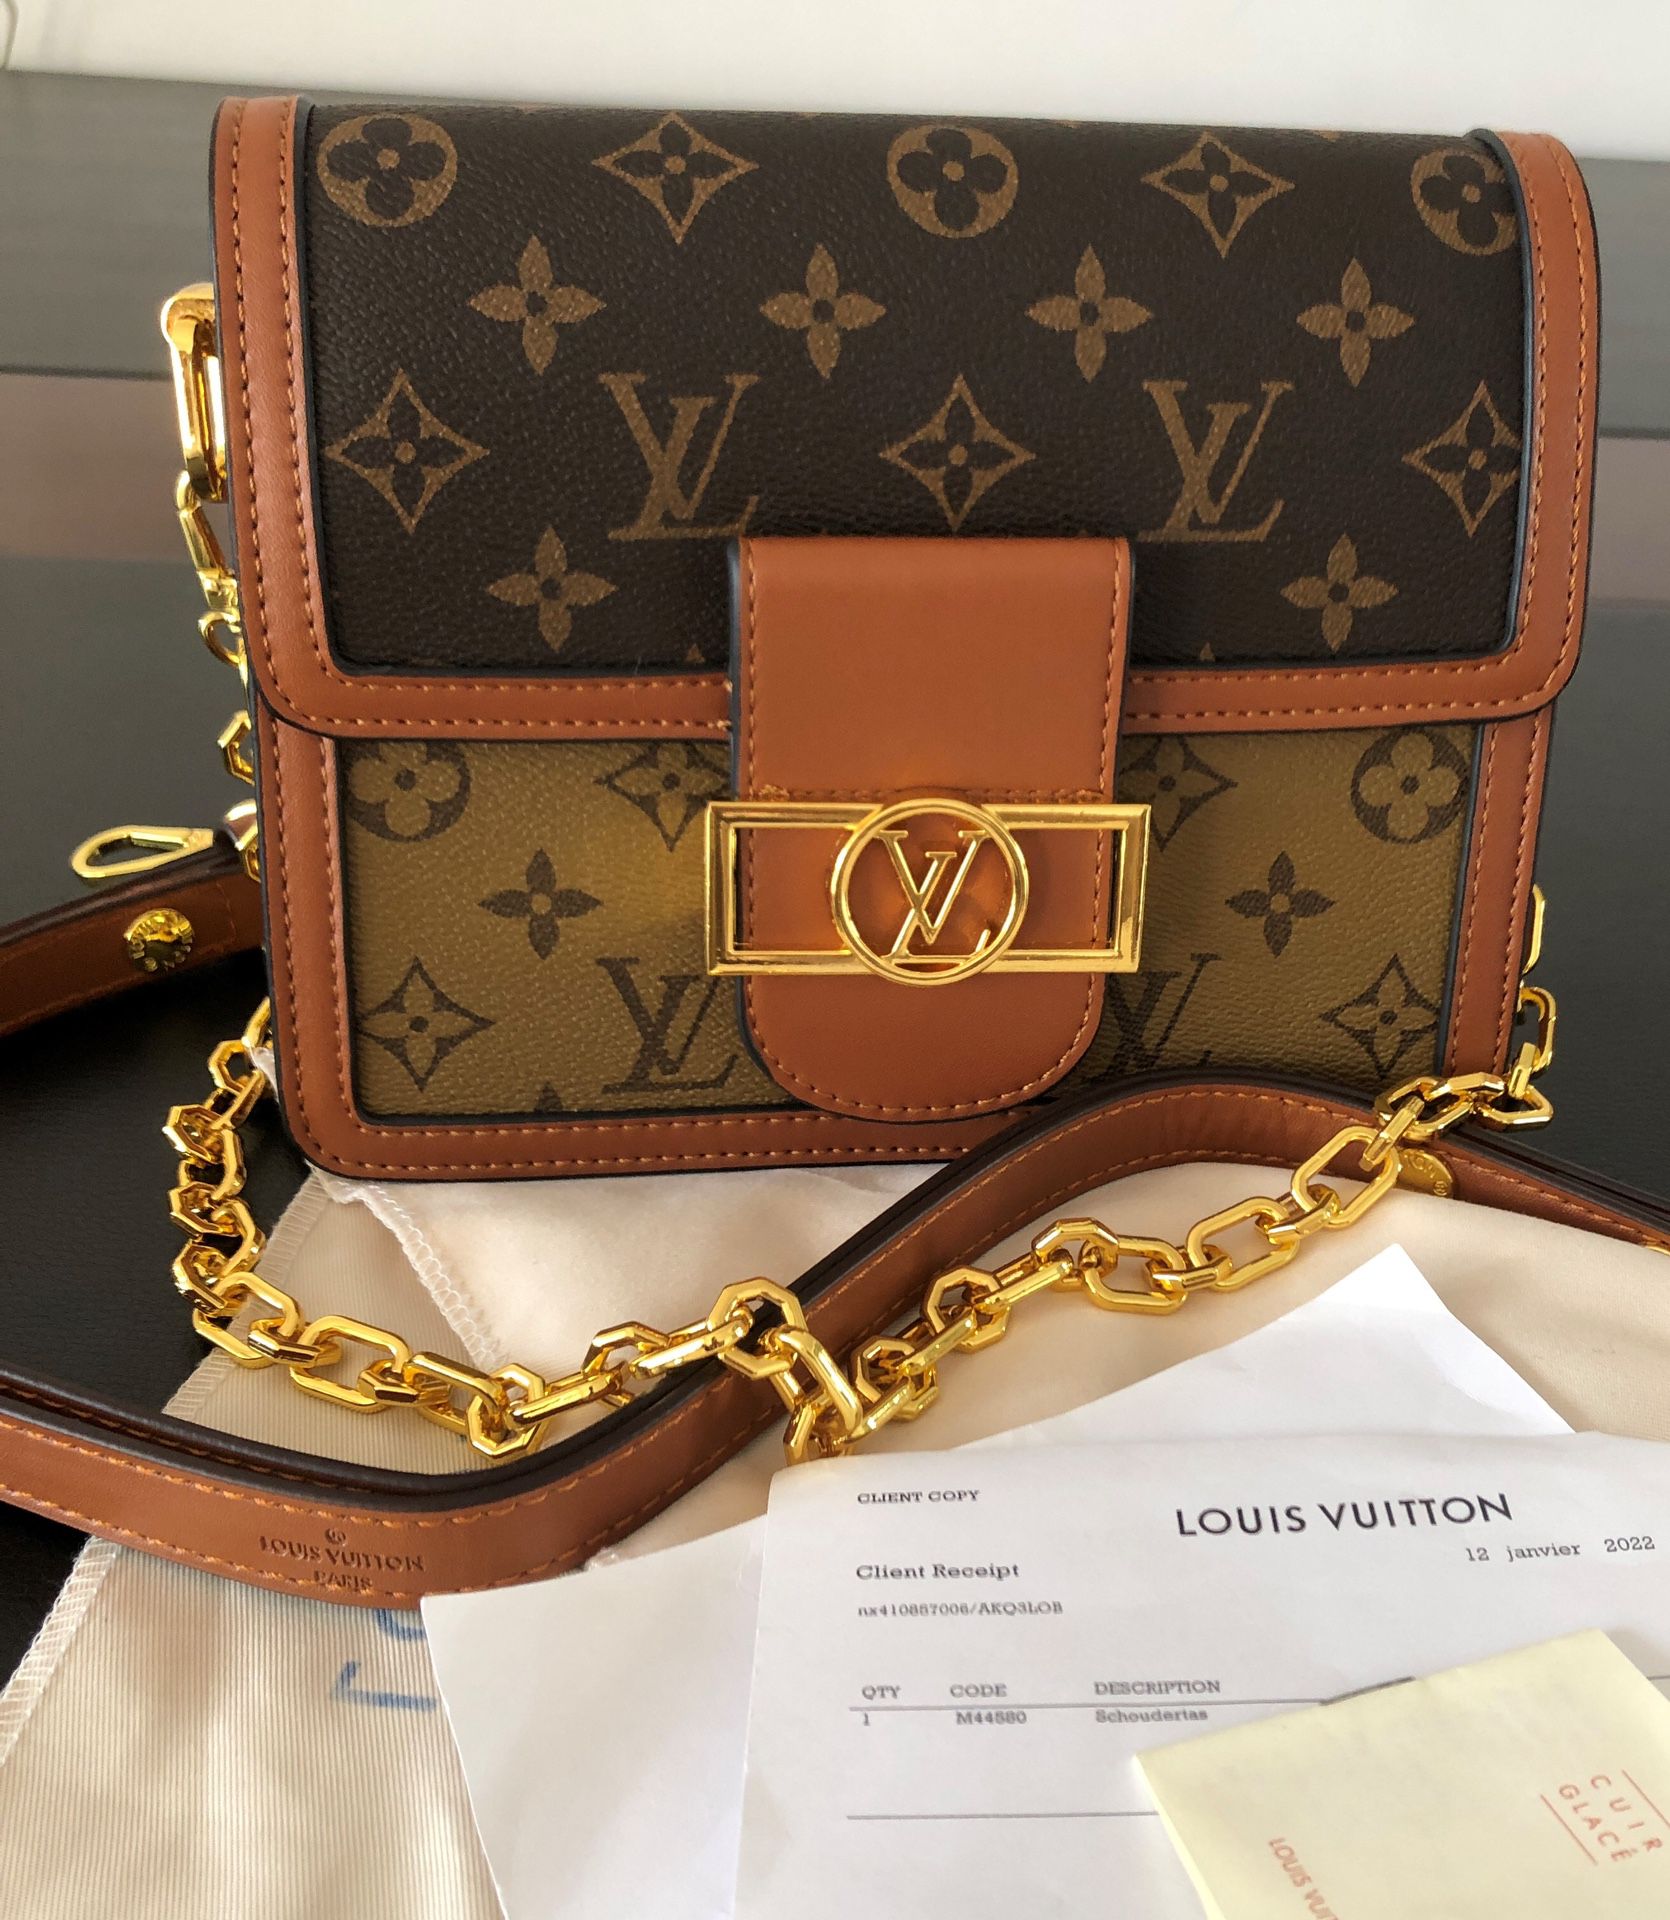 LV / Louis Vuitton bag brown messenger bag old flower handbag ladies  shoulder bag for Sale in Willoughby, OH - OfferUp